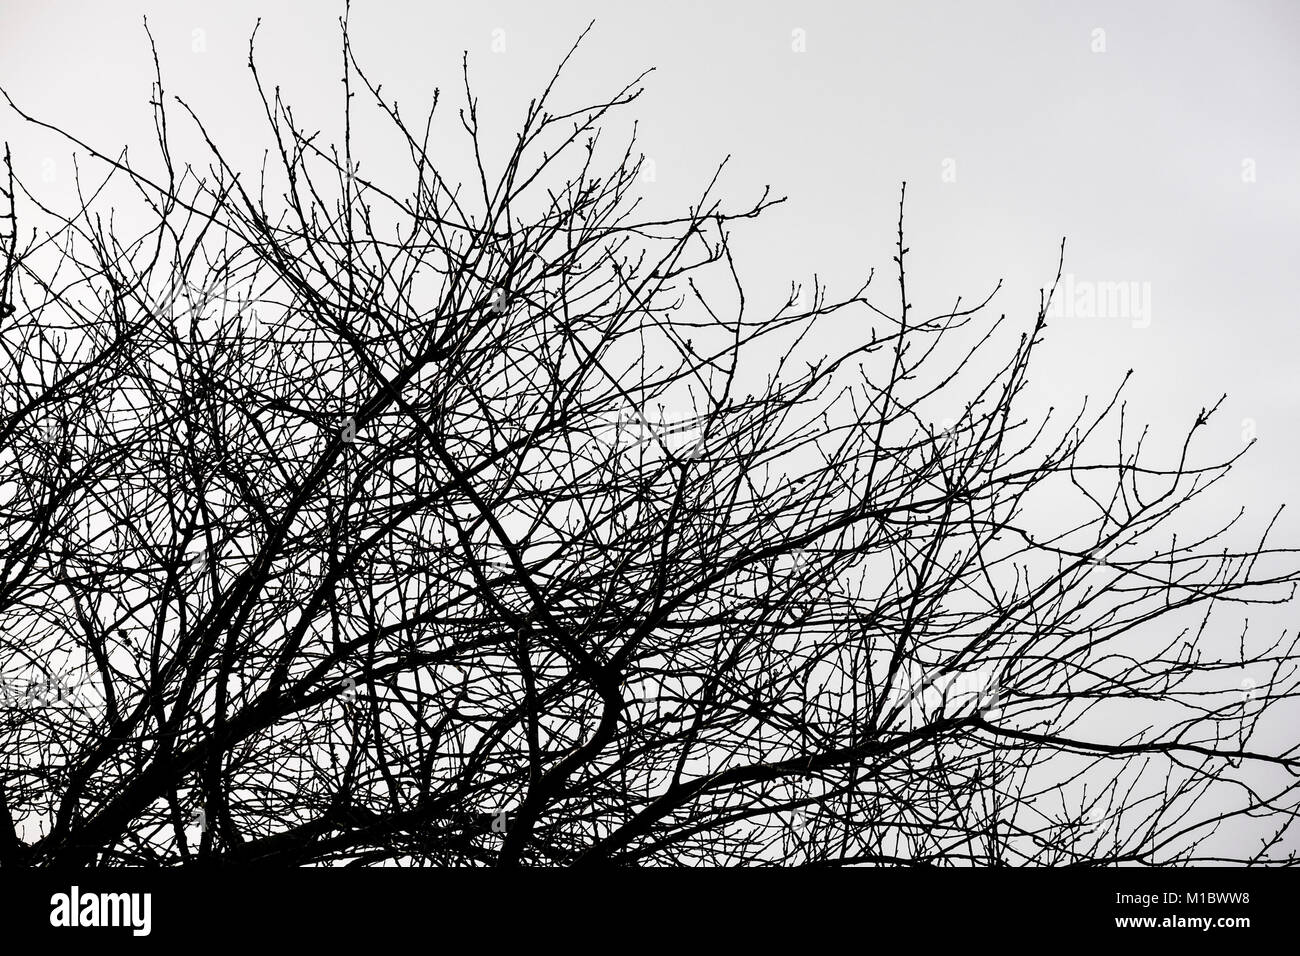 Baum Silhouette gegen einen grauen Himmel. Stockfoto